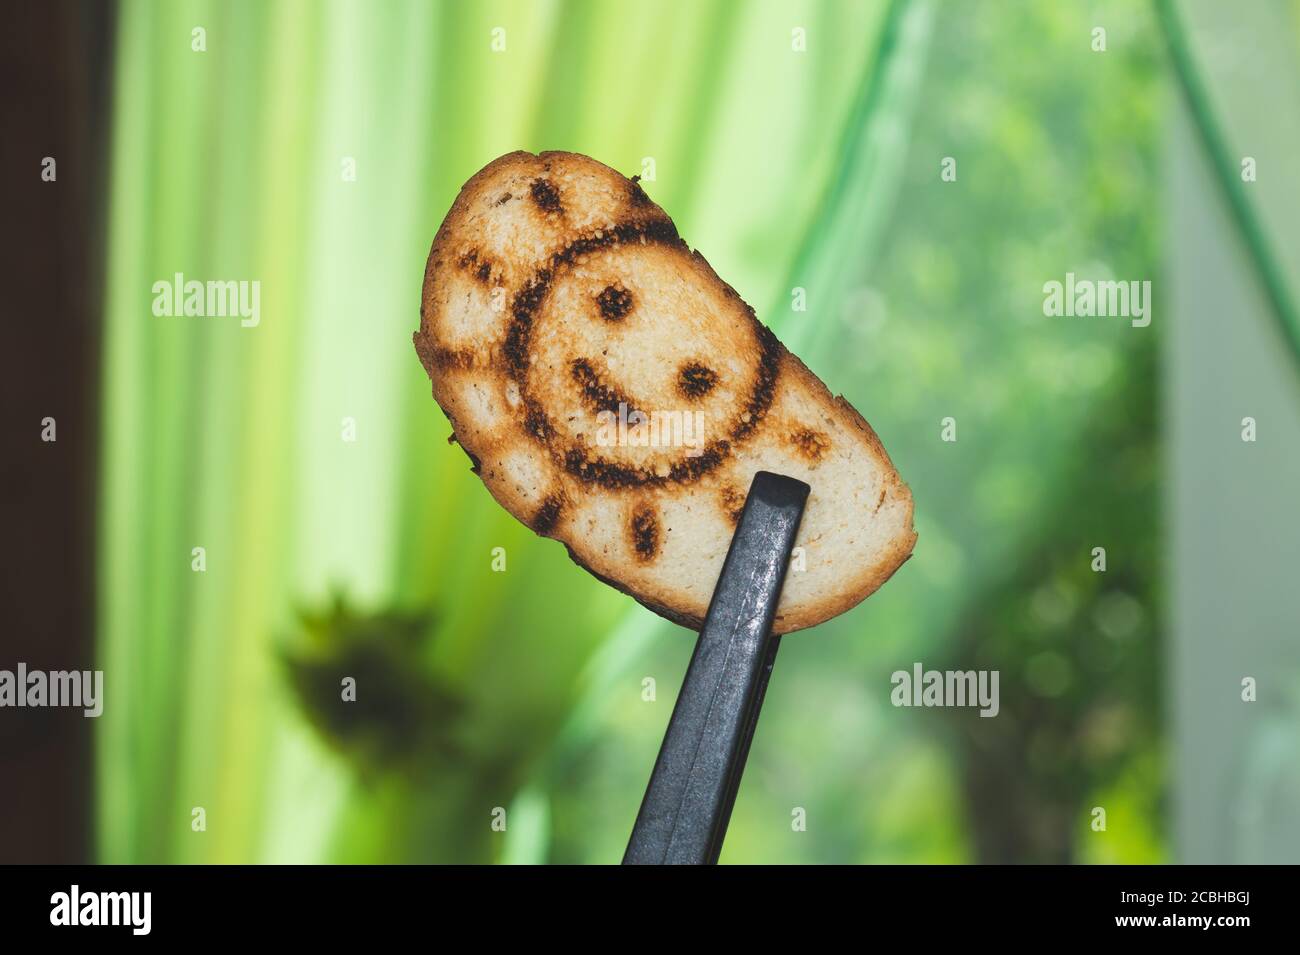 Pane tostato con un'immagine solare sorridente. Simbolo sul pane tostato Foto Stock